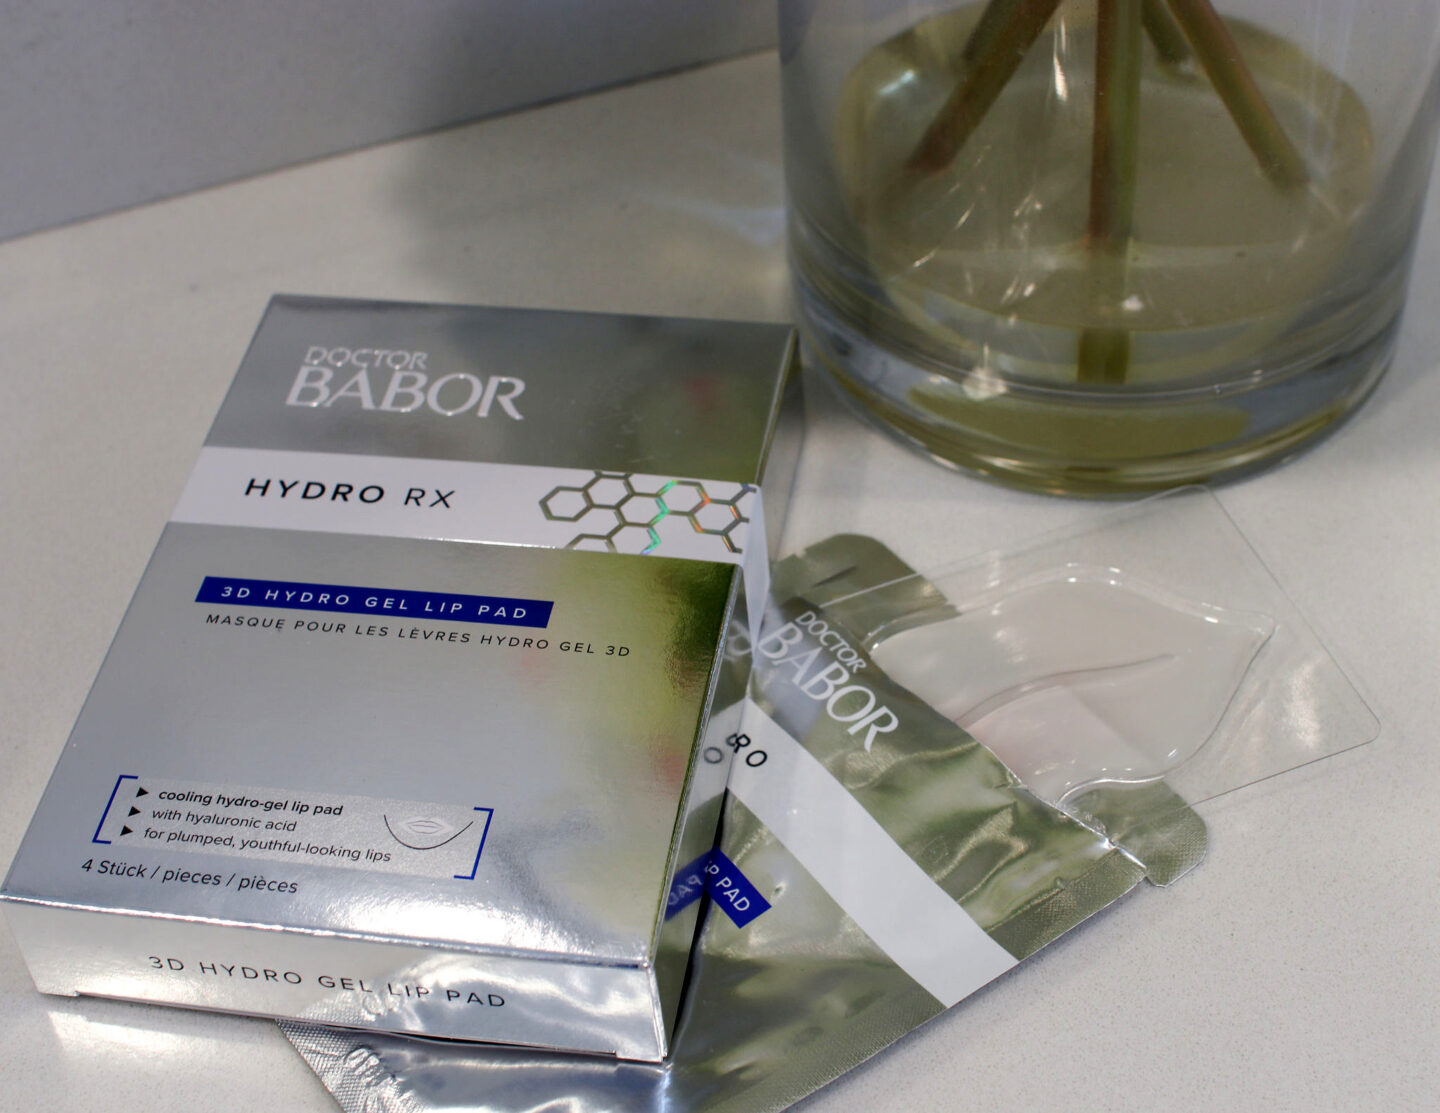 Doctor Babor Hydro RX 3D Hydro Gel Lip Pad